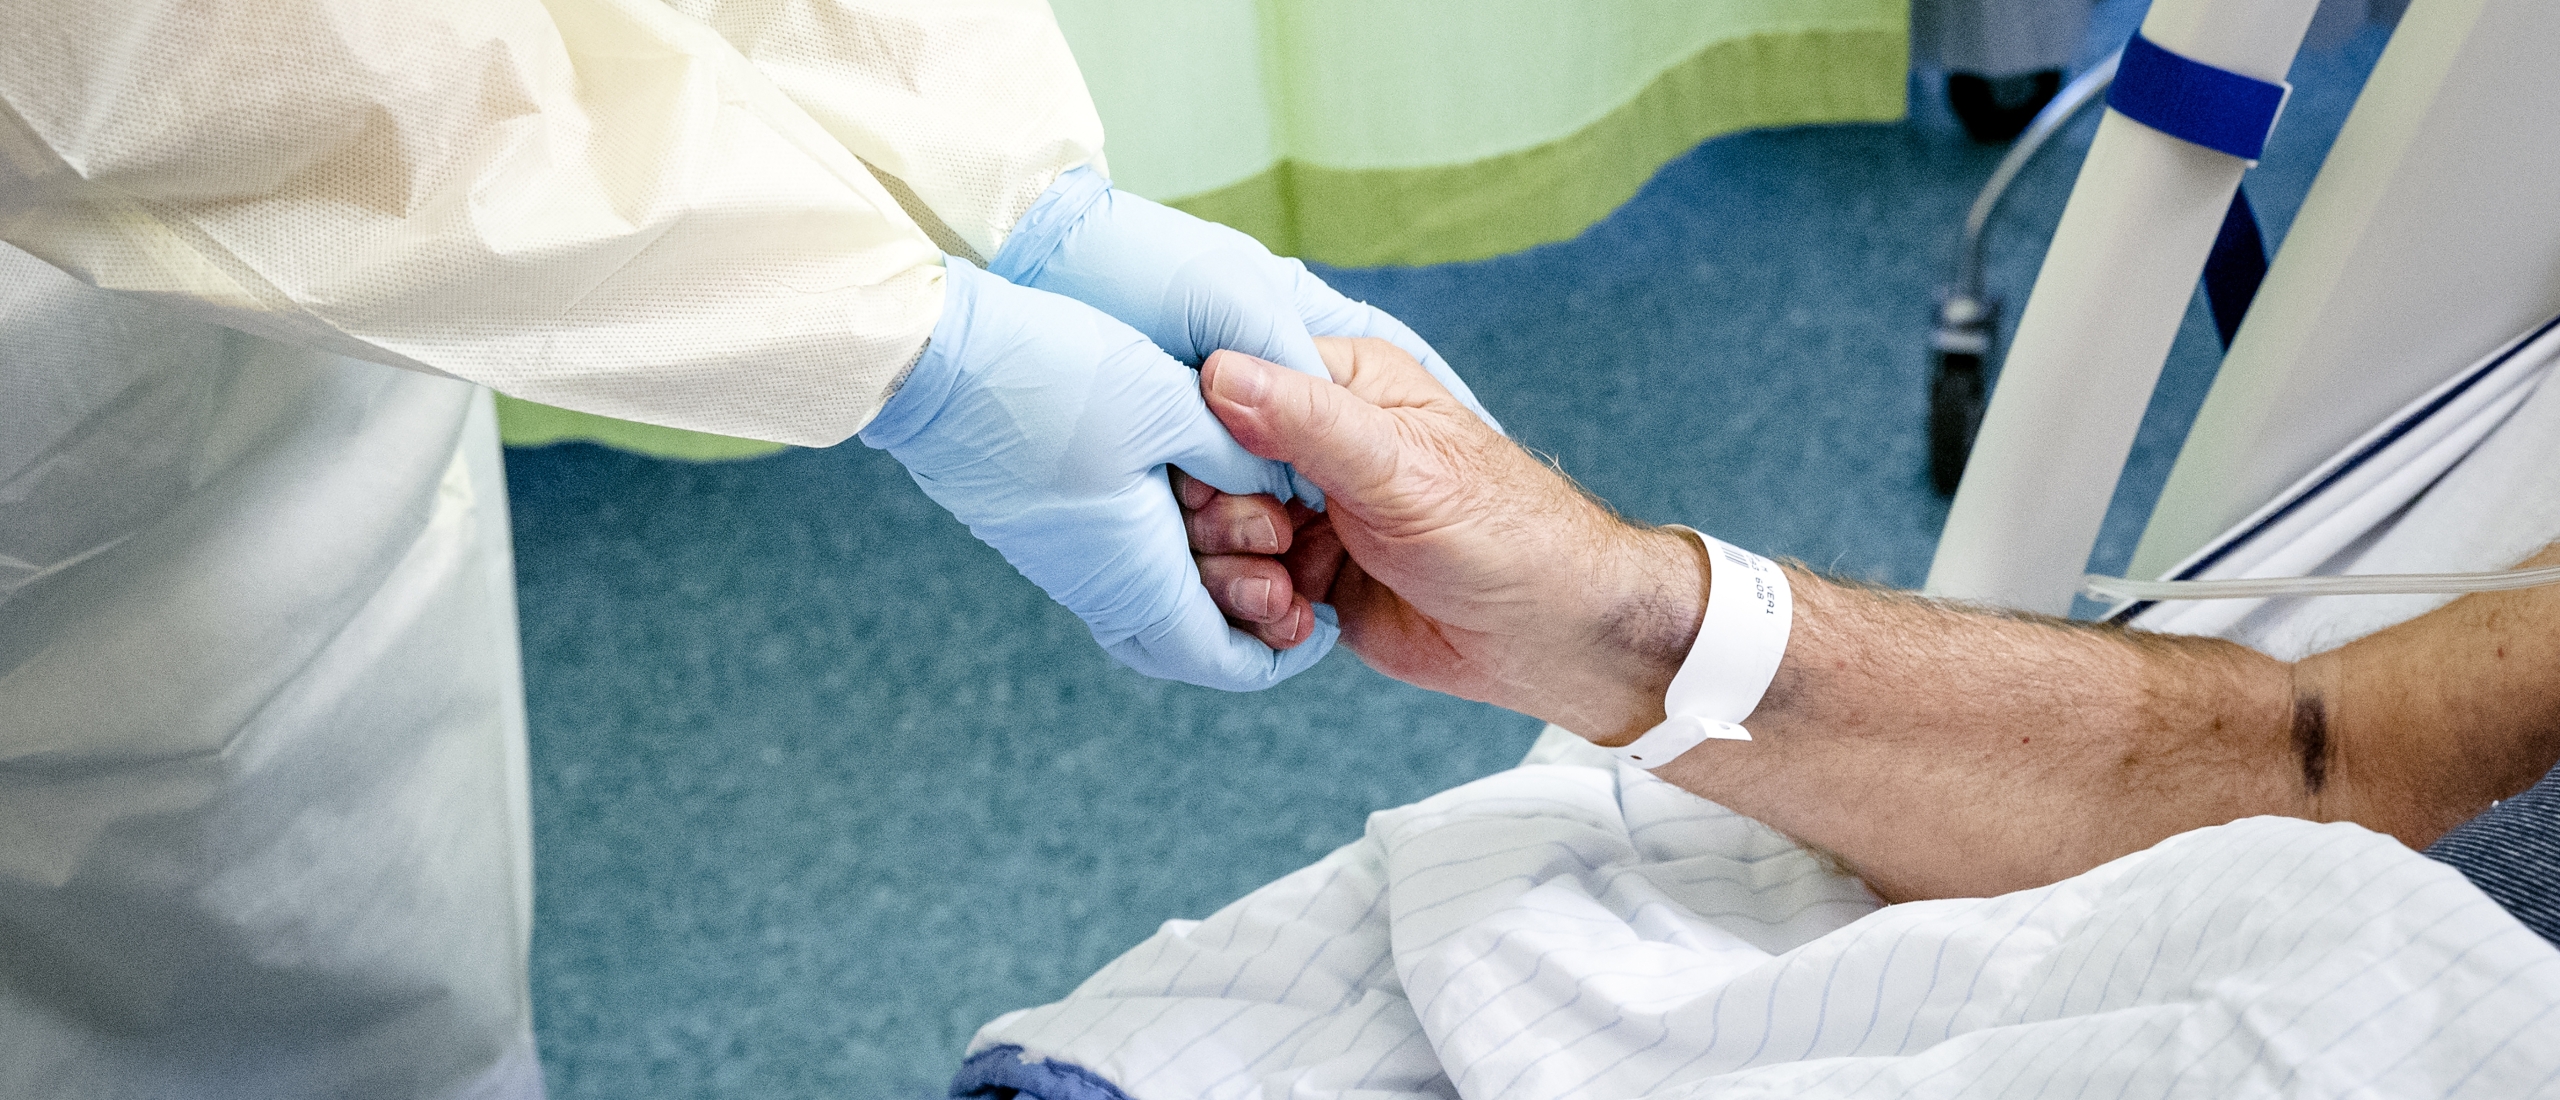 Aantal coronapatiënten in ziekenhuizen stijgt naar bijna 800